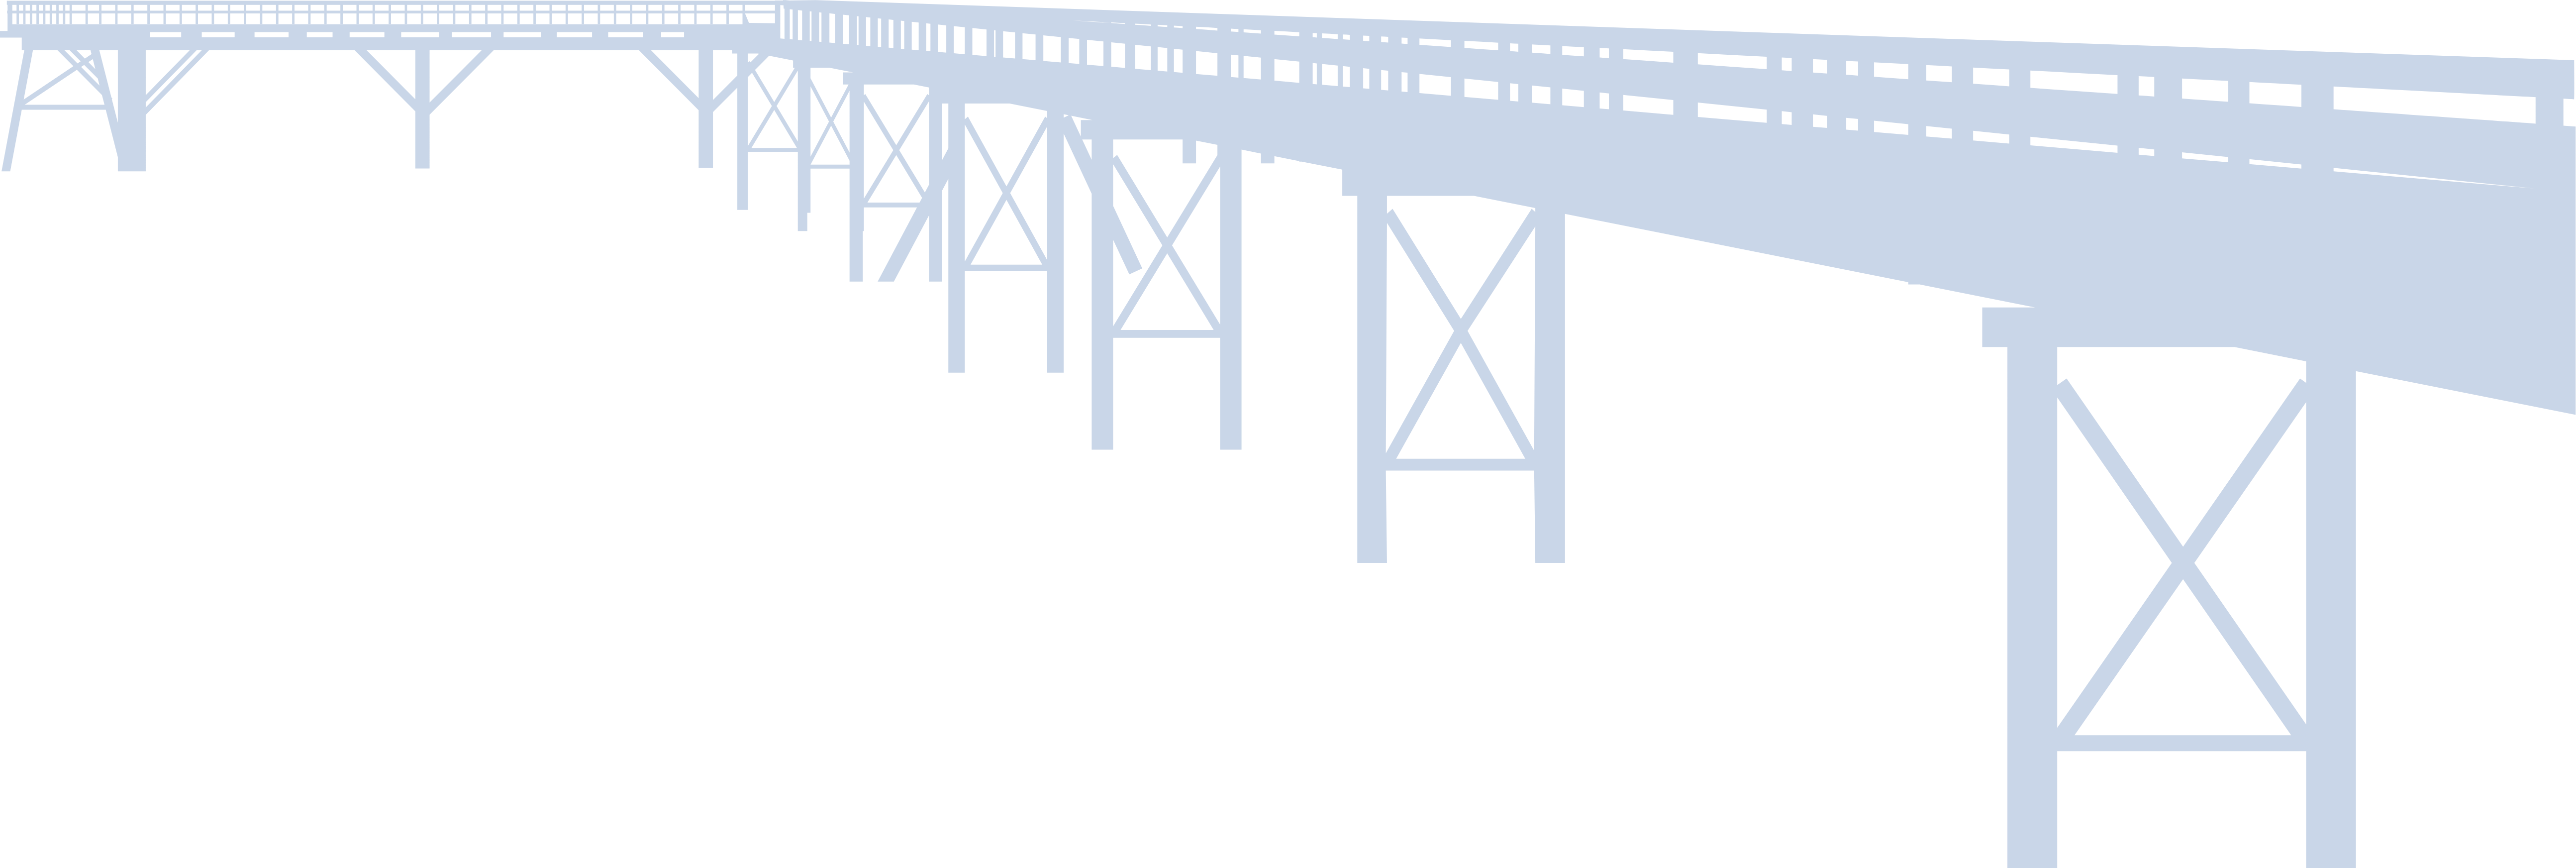 footer-bridge